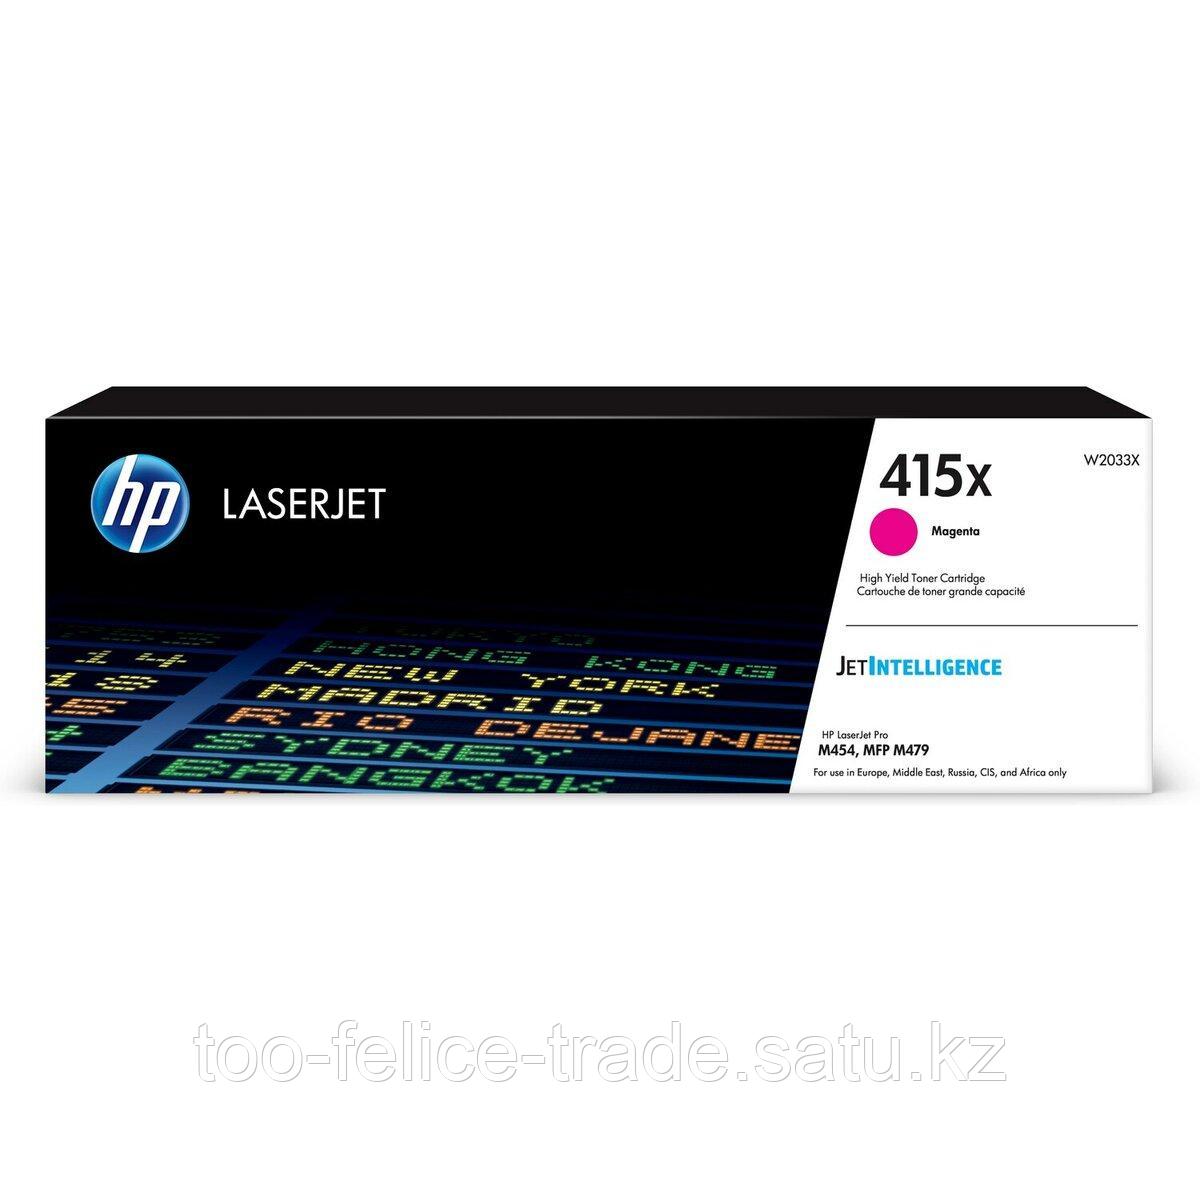 HP W2033X 415X Magenta LaserJet Toner Cartridge for Color LaserJet M454/M479, up to 6000 pages